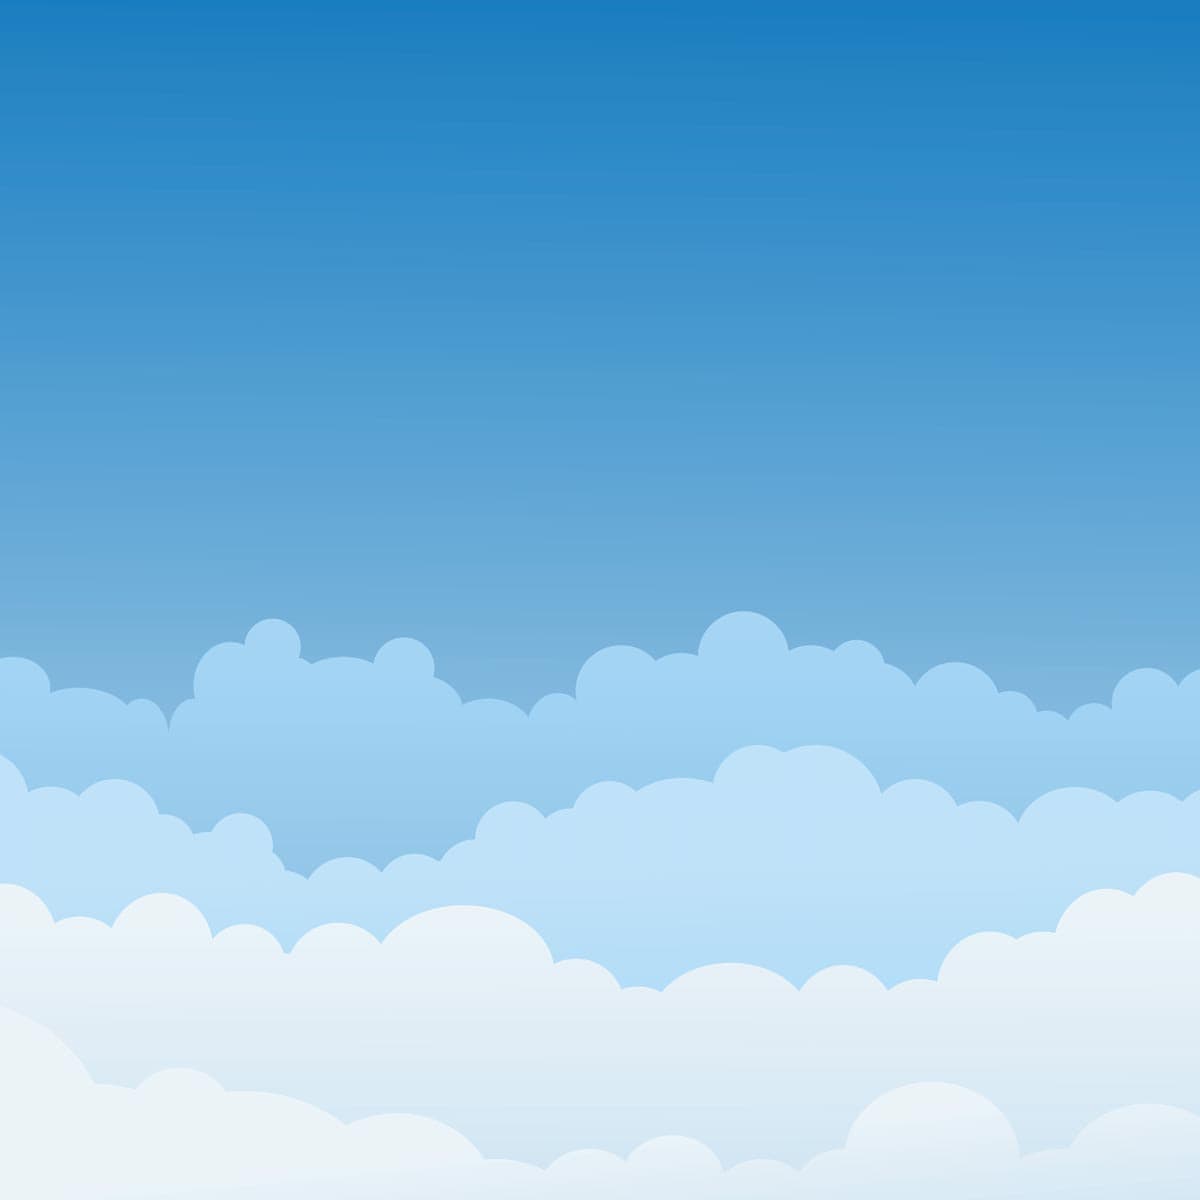 Cloudservice